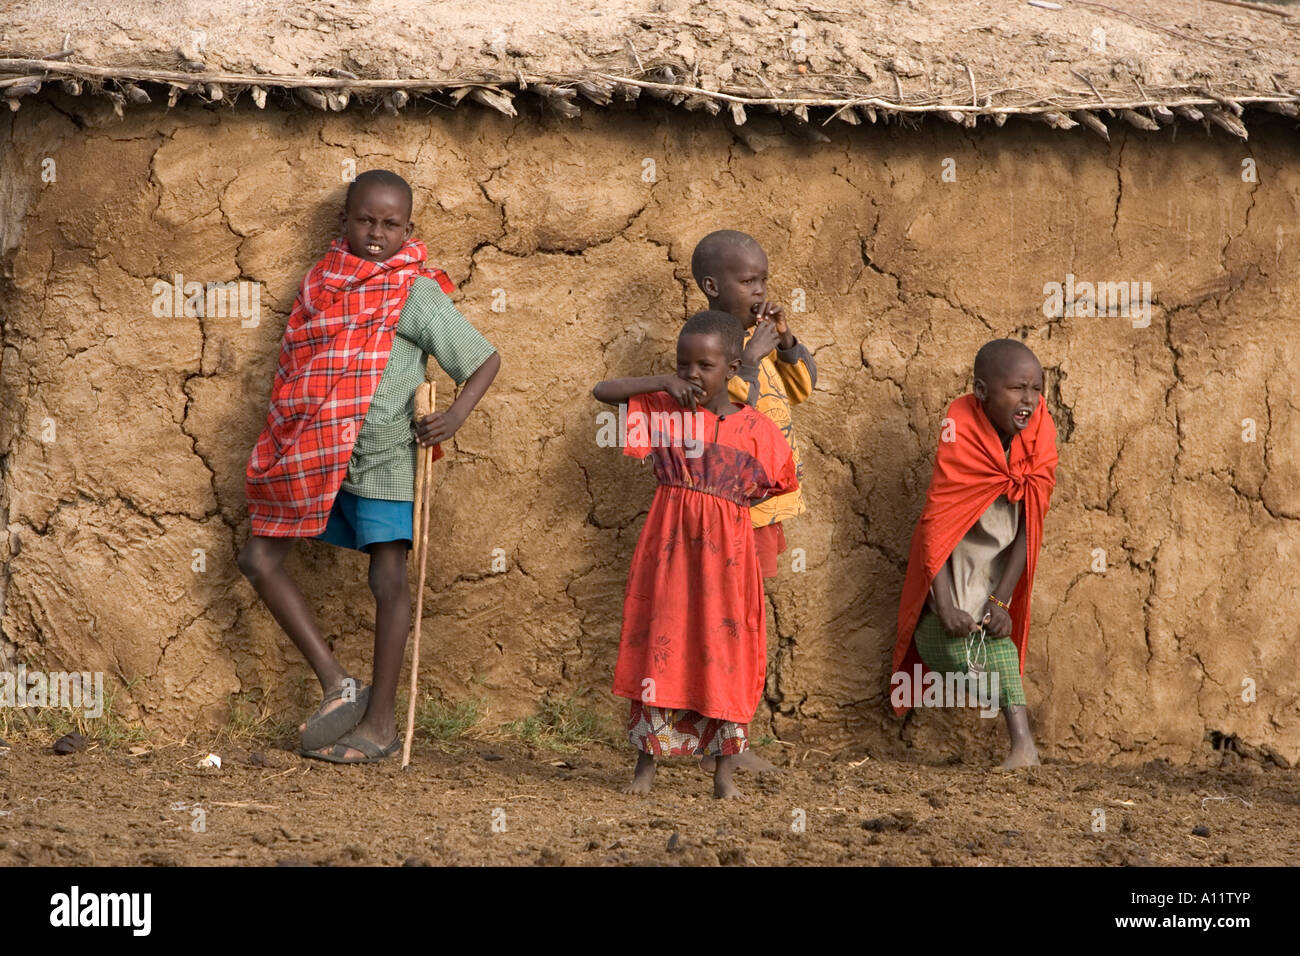 Frères et soeur Masaai posant devant leur hutte de terre dans leur village de Maasai Mara au Kenya Banque D'Images